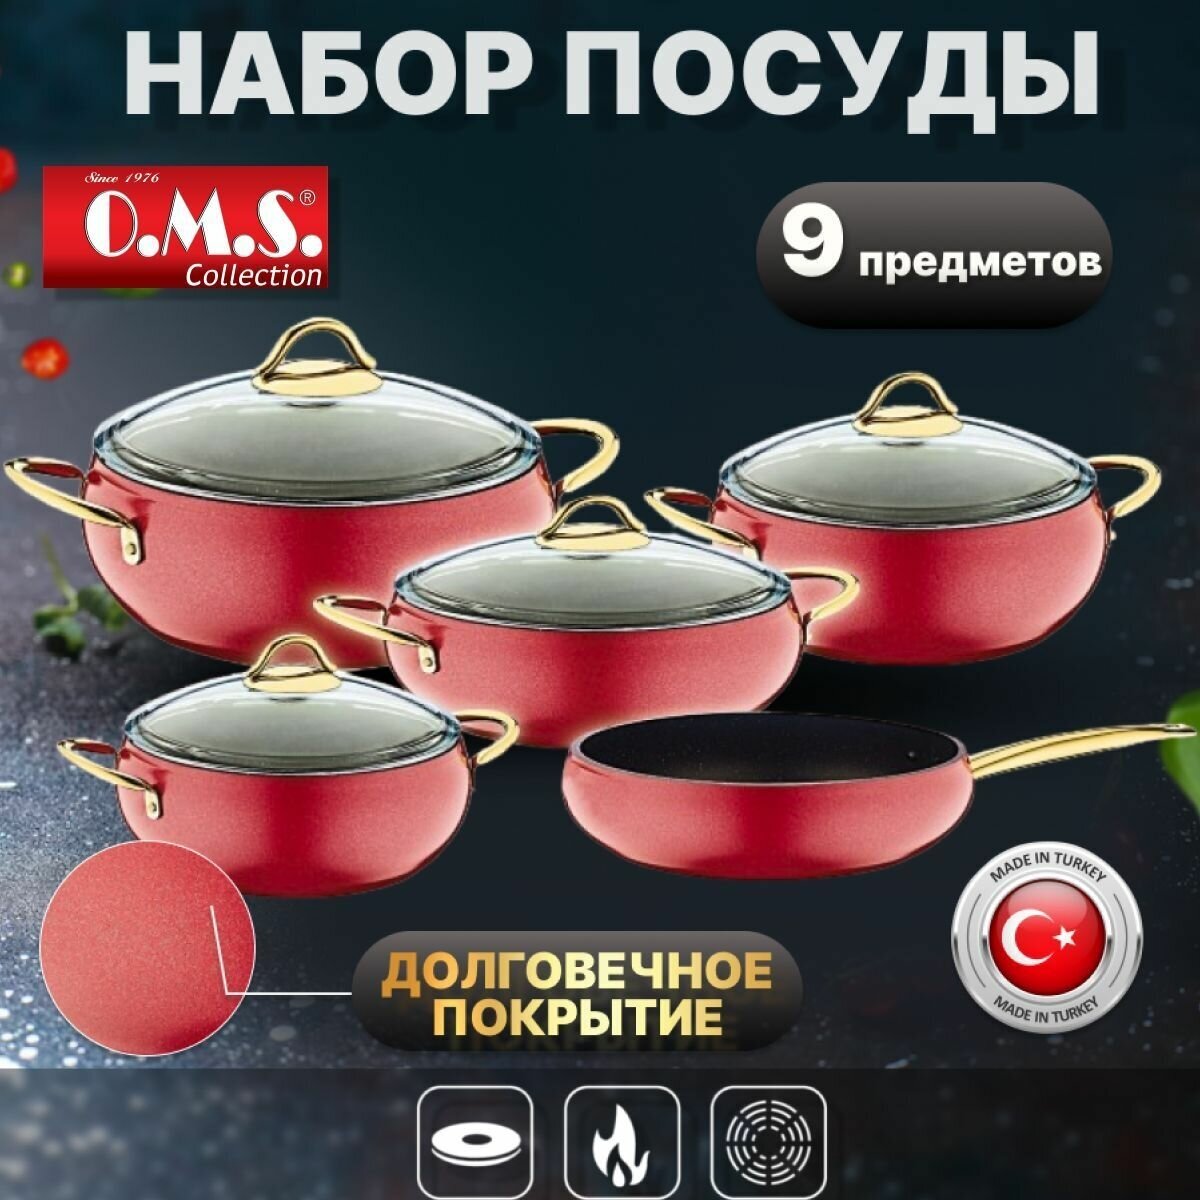 Набор посуды с антипригарным покрытием из 9 предметов. Цвет: красный. O.M.S. Collection.